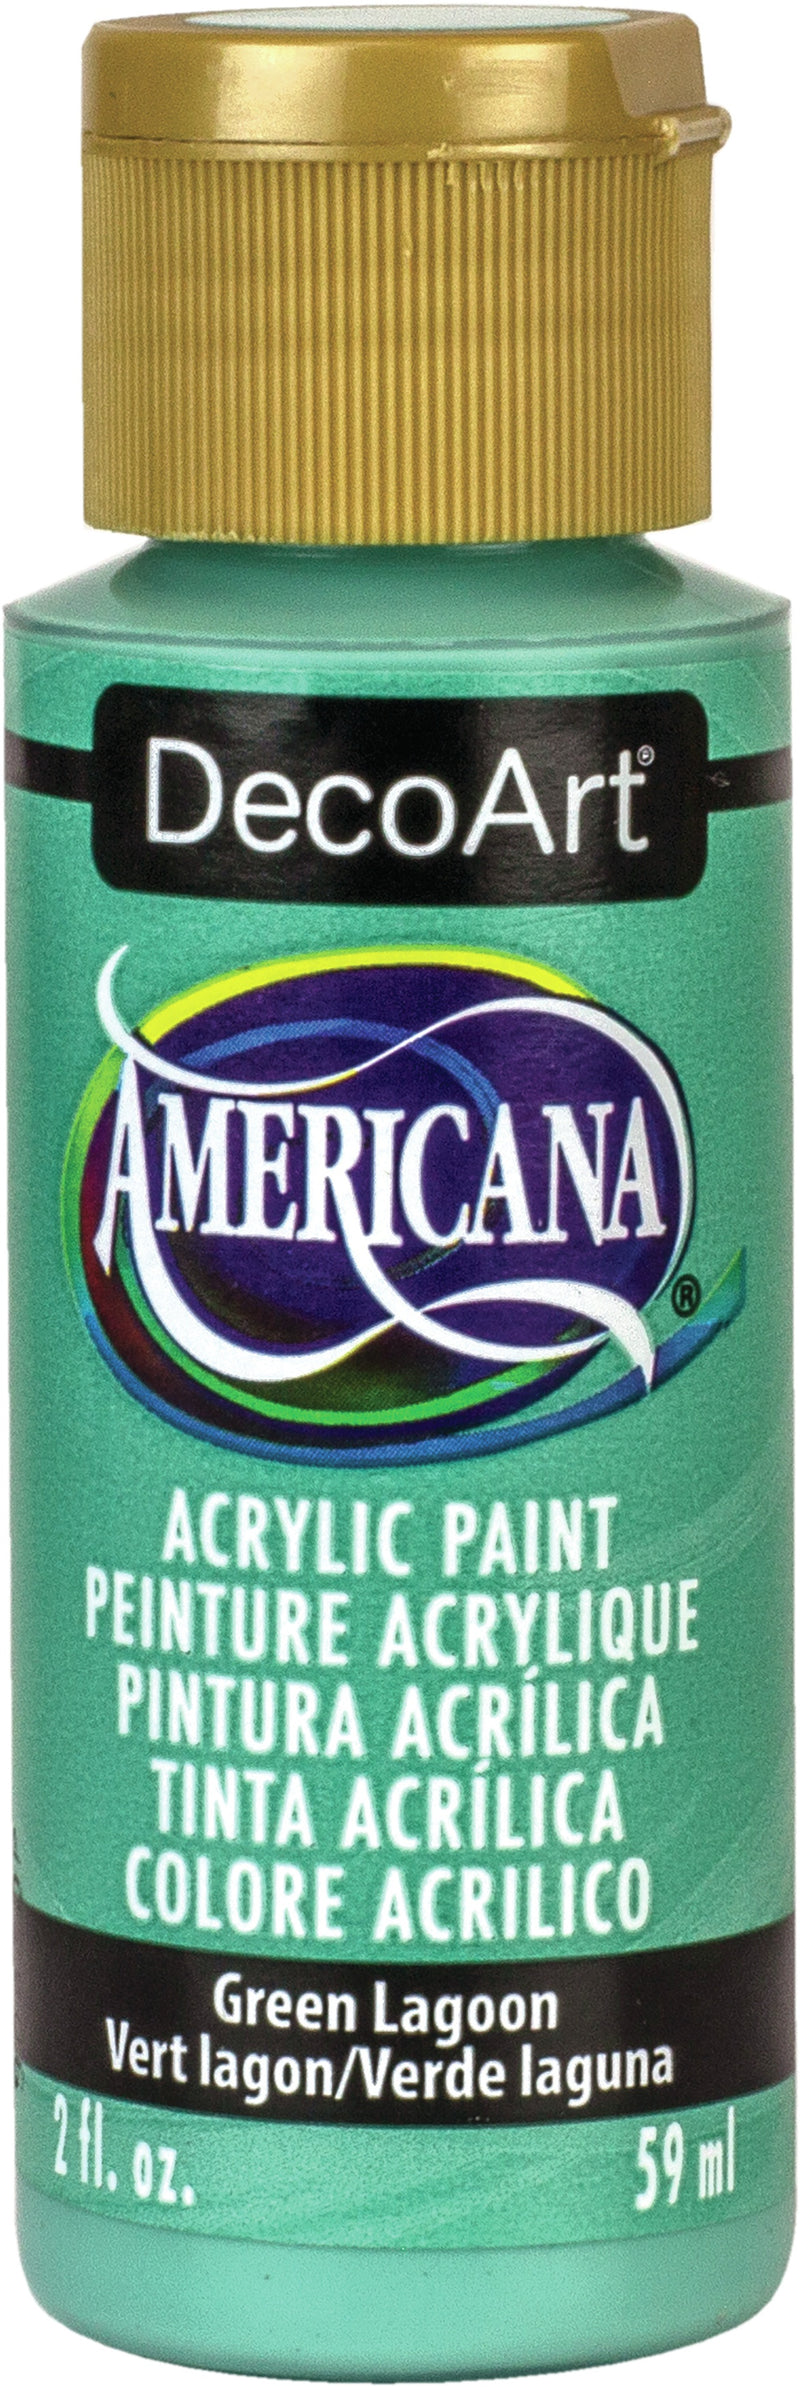 Deco Art Americana Acrylic Paint, 2-Ounce, Burgundy Wine